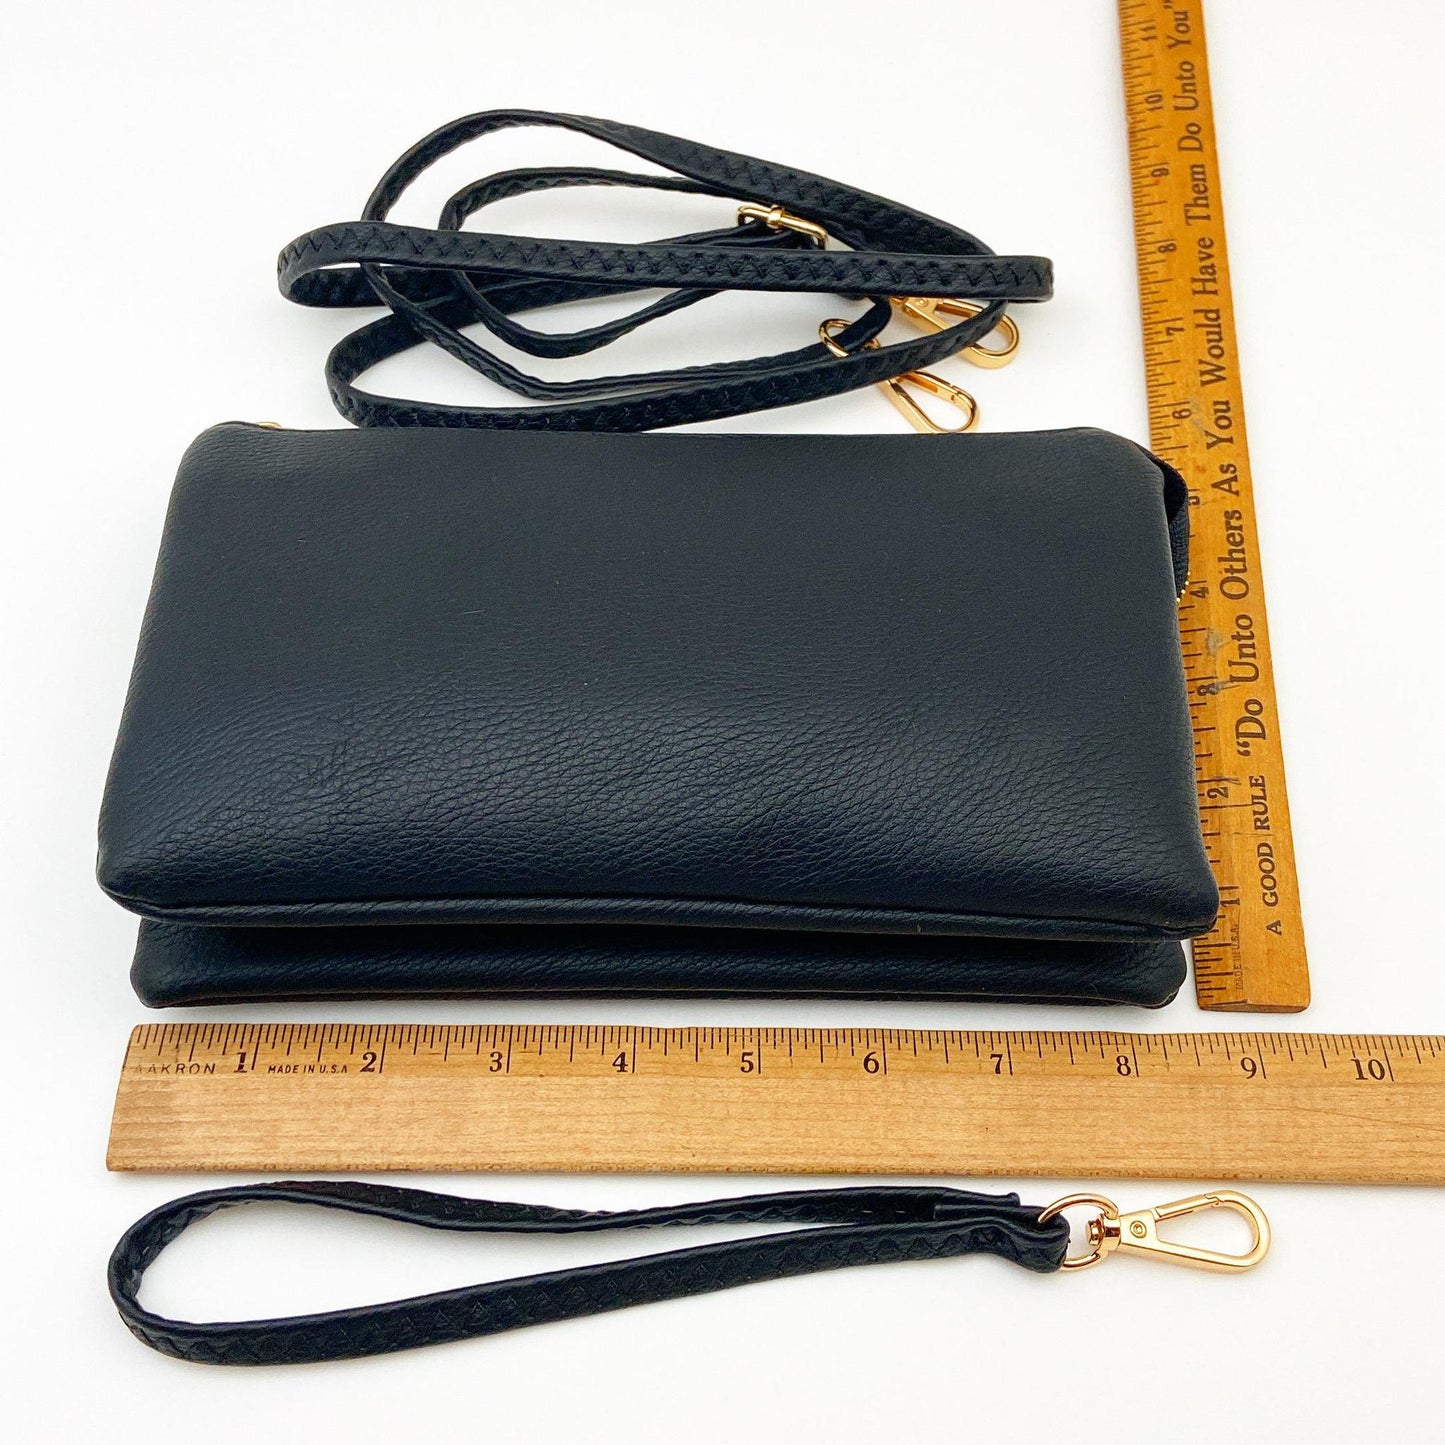 4 in 1 Handbag - Crossbody/Clutch/Wristlet - Powder Blue